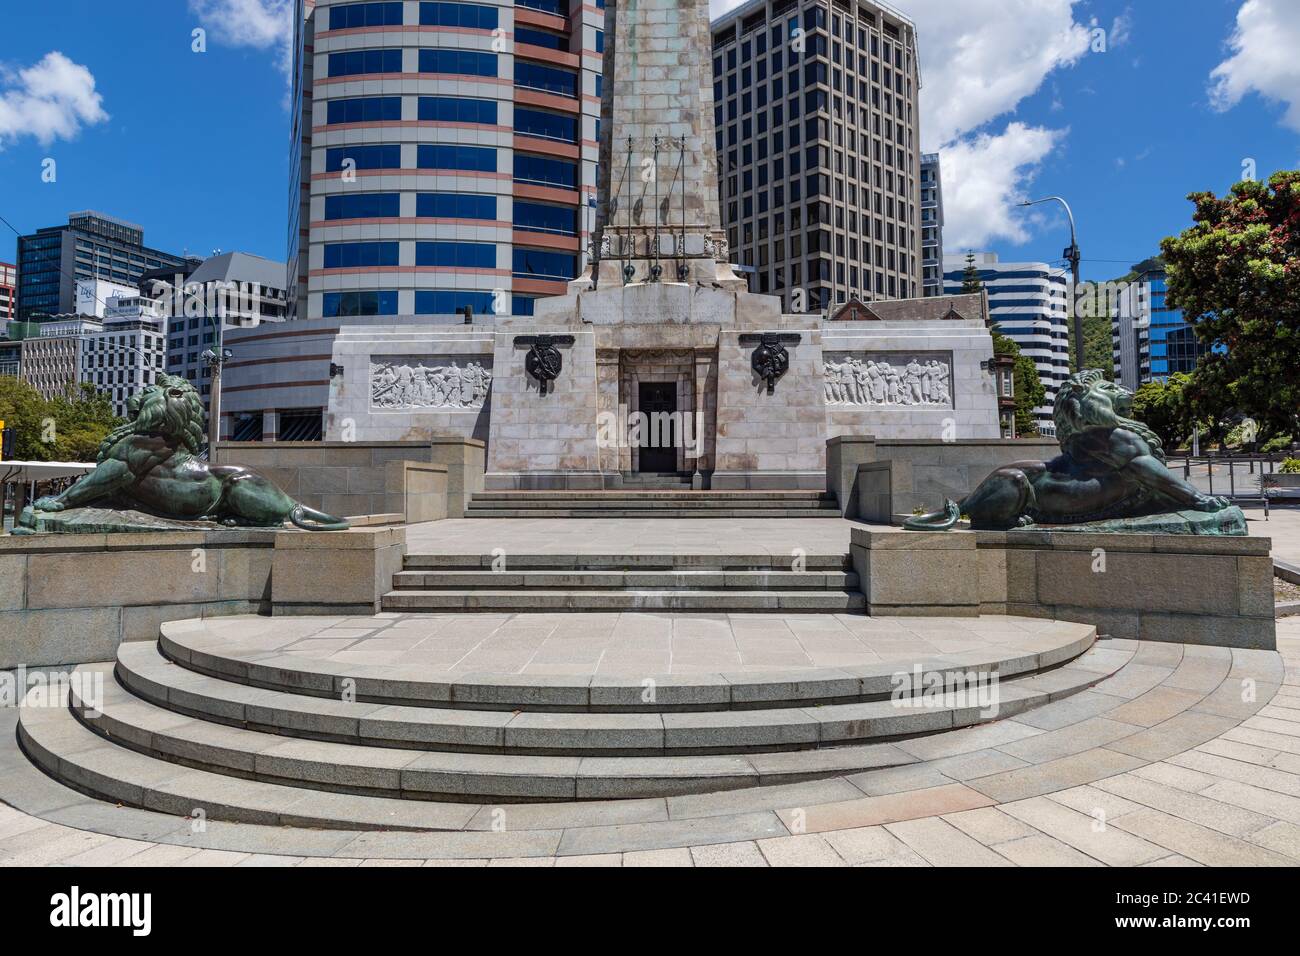 Les deux lions de bronze du Cenotaph Wellington, à l'intersection du quai Lambton et de la rue Bowen, également connu sous le nom de Monument commémoratif de guerre des citoyens de Wellington. Banque D'Images